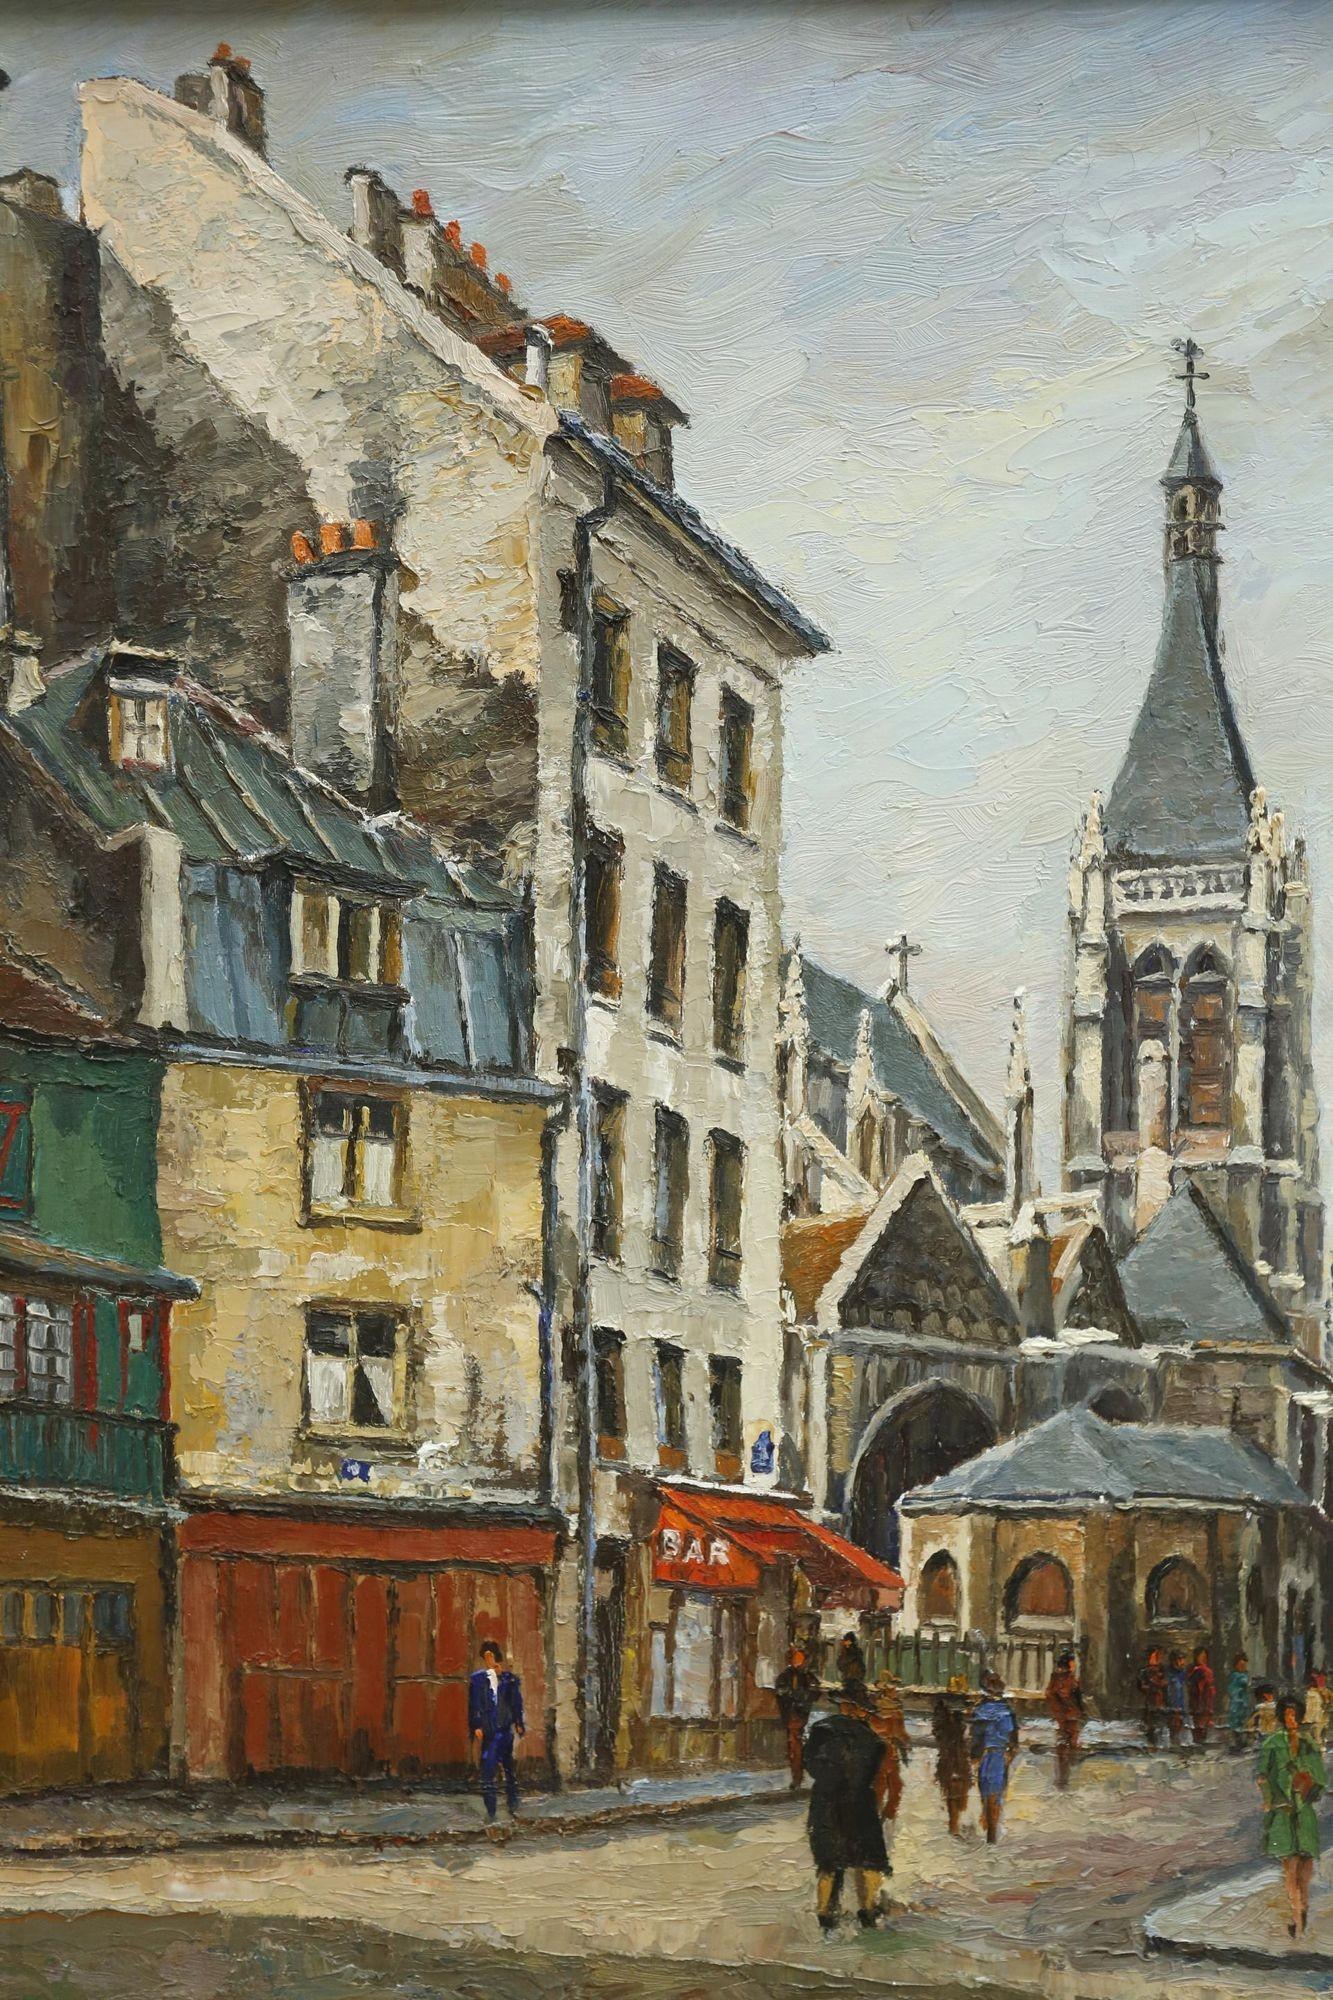 Il s'agit d'une très belle scène de rue parisienne peinte à l'huile sur toile au 20e siècle. La texture de la peinture est superbe et la qualité du travail donne vraiment une idée de ce que serait la vie dans cette rue. La rue est 